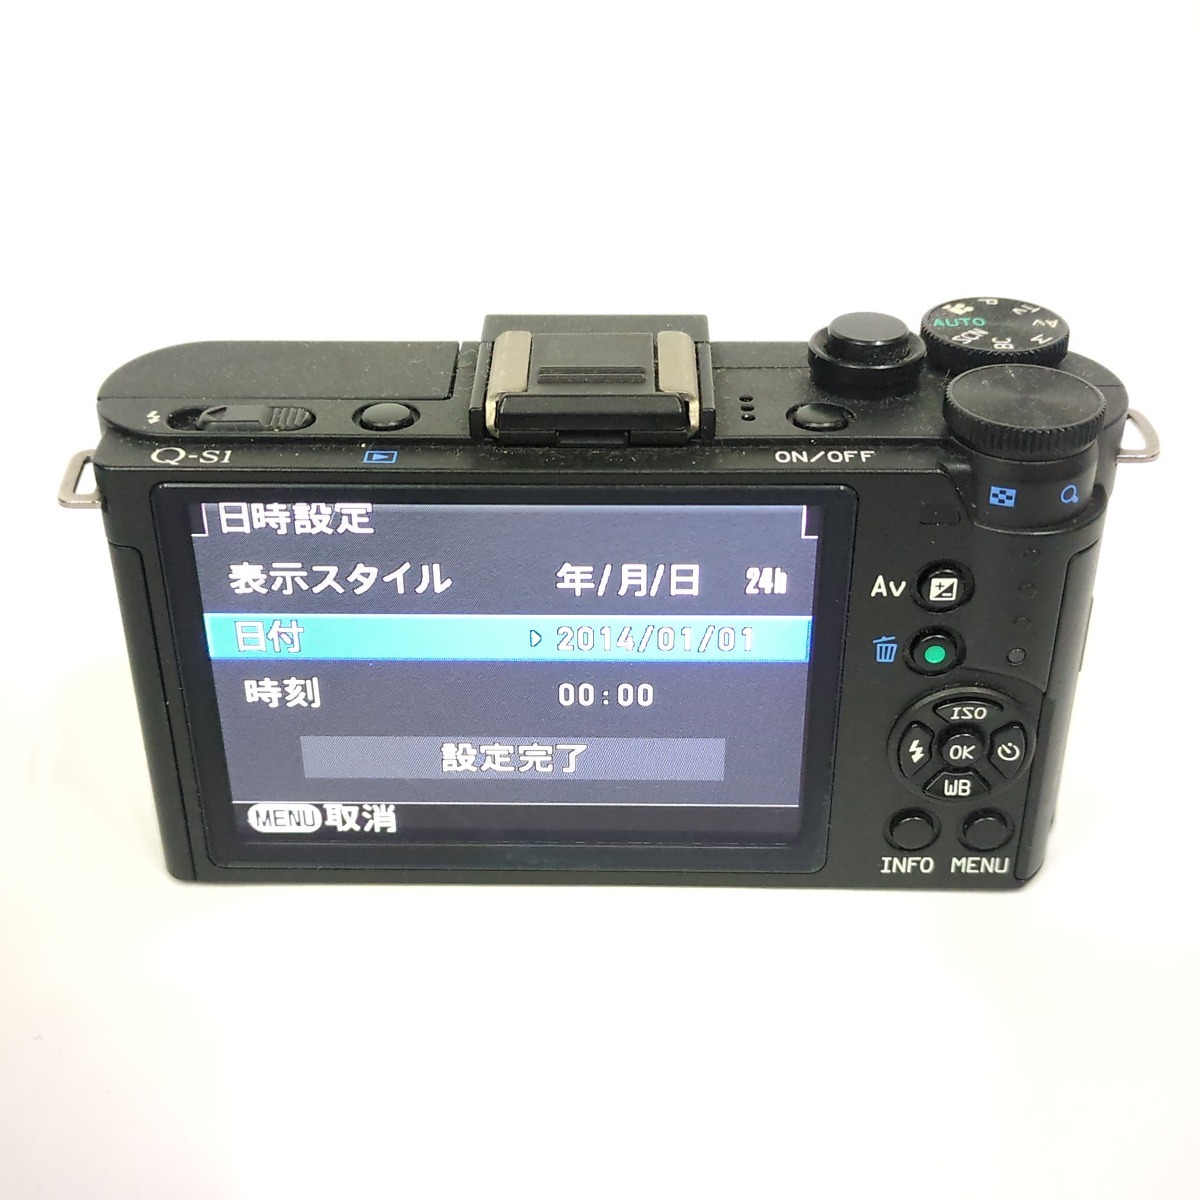 1円 PENTAX Q-S1 SMC PENTAX 1:2.8-4.5 5-15mm 1:3.7-4 3.8-5.9mm 含む ミラーレス一眼 カメラ セット L302026_画像3